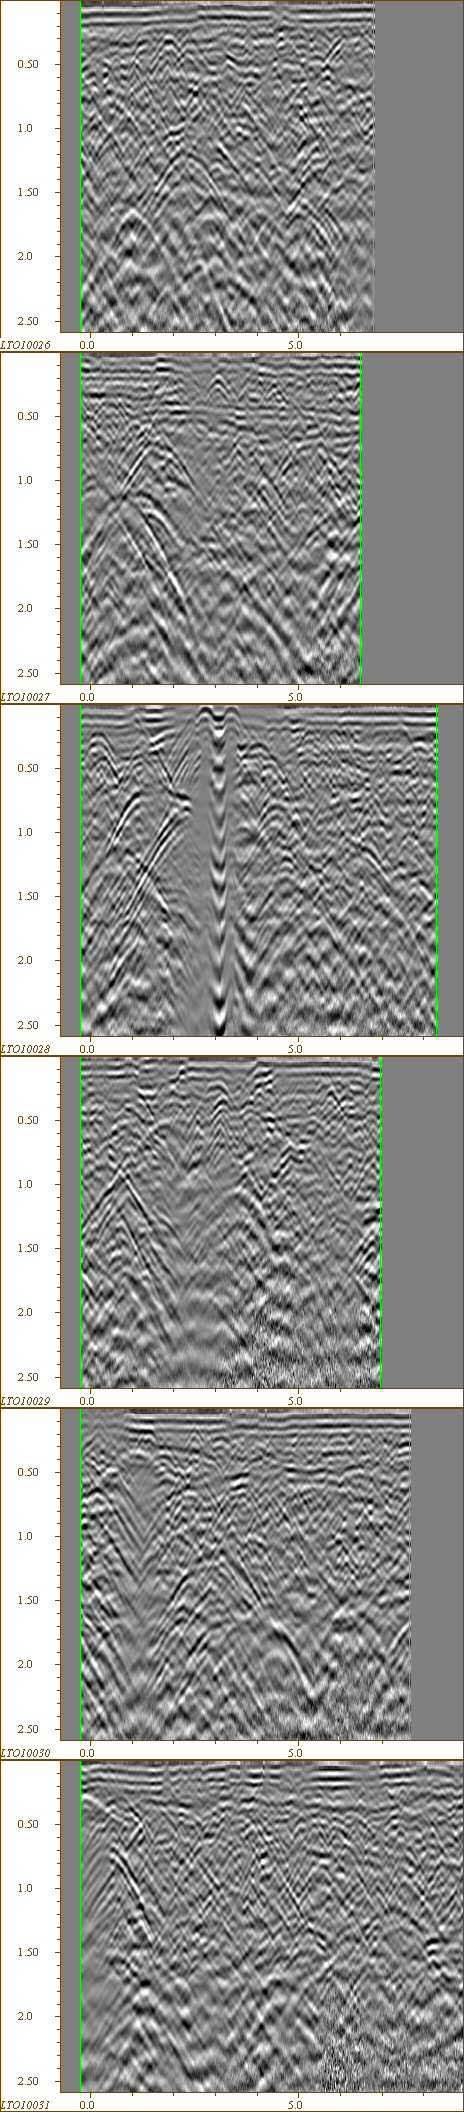 differenti caratteristiche elettromagnetiche tramite sezioni verticali radar-stratigrafiche. ig.